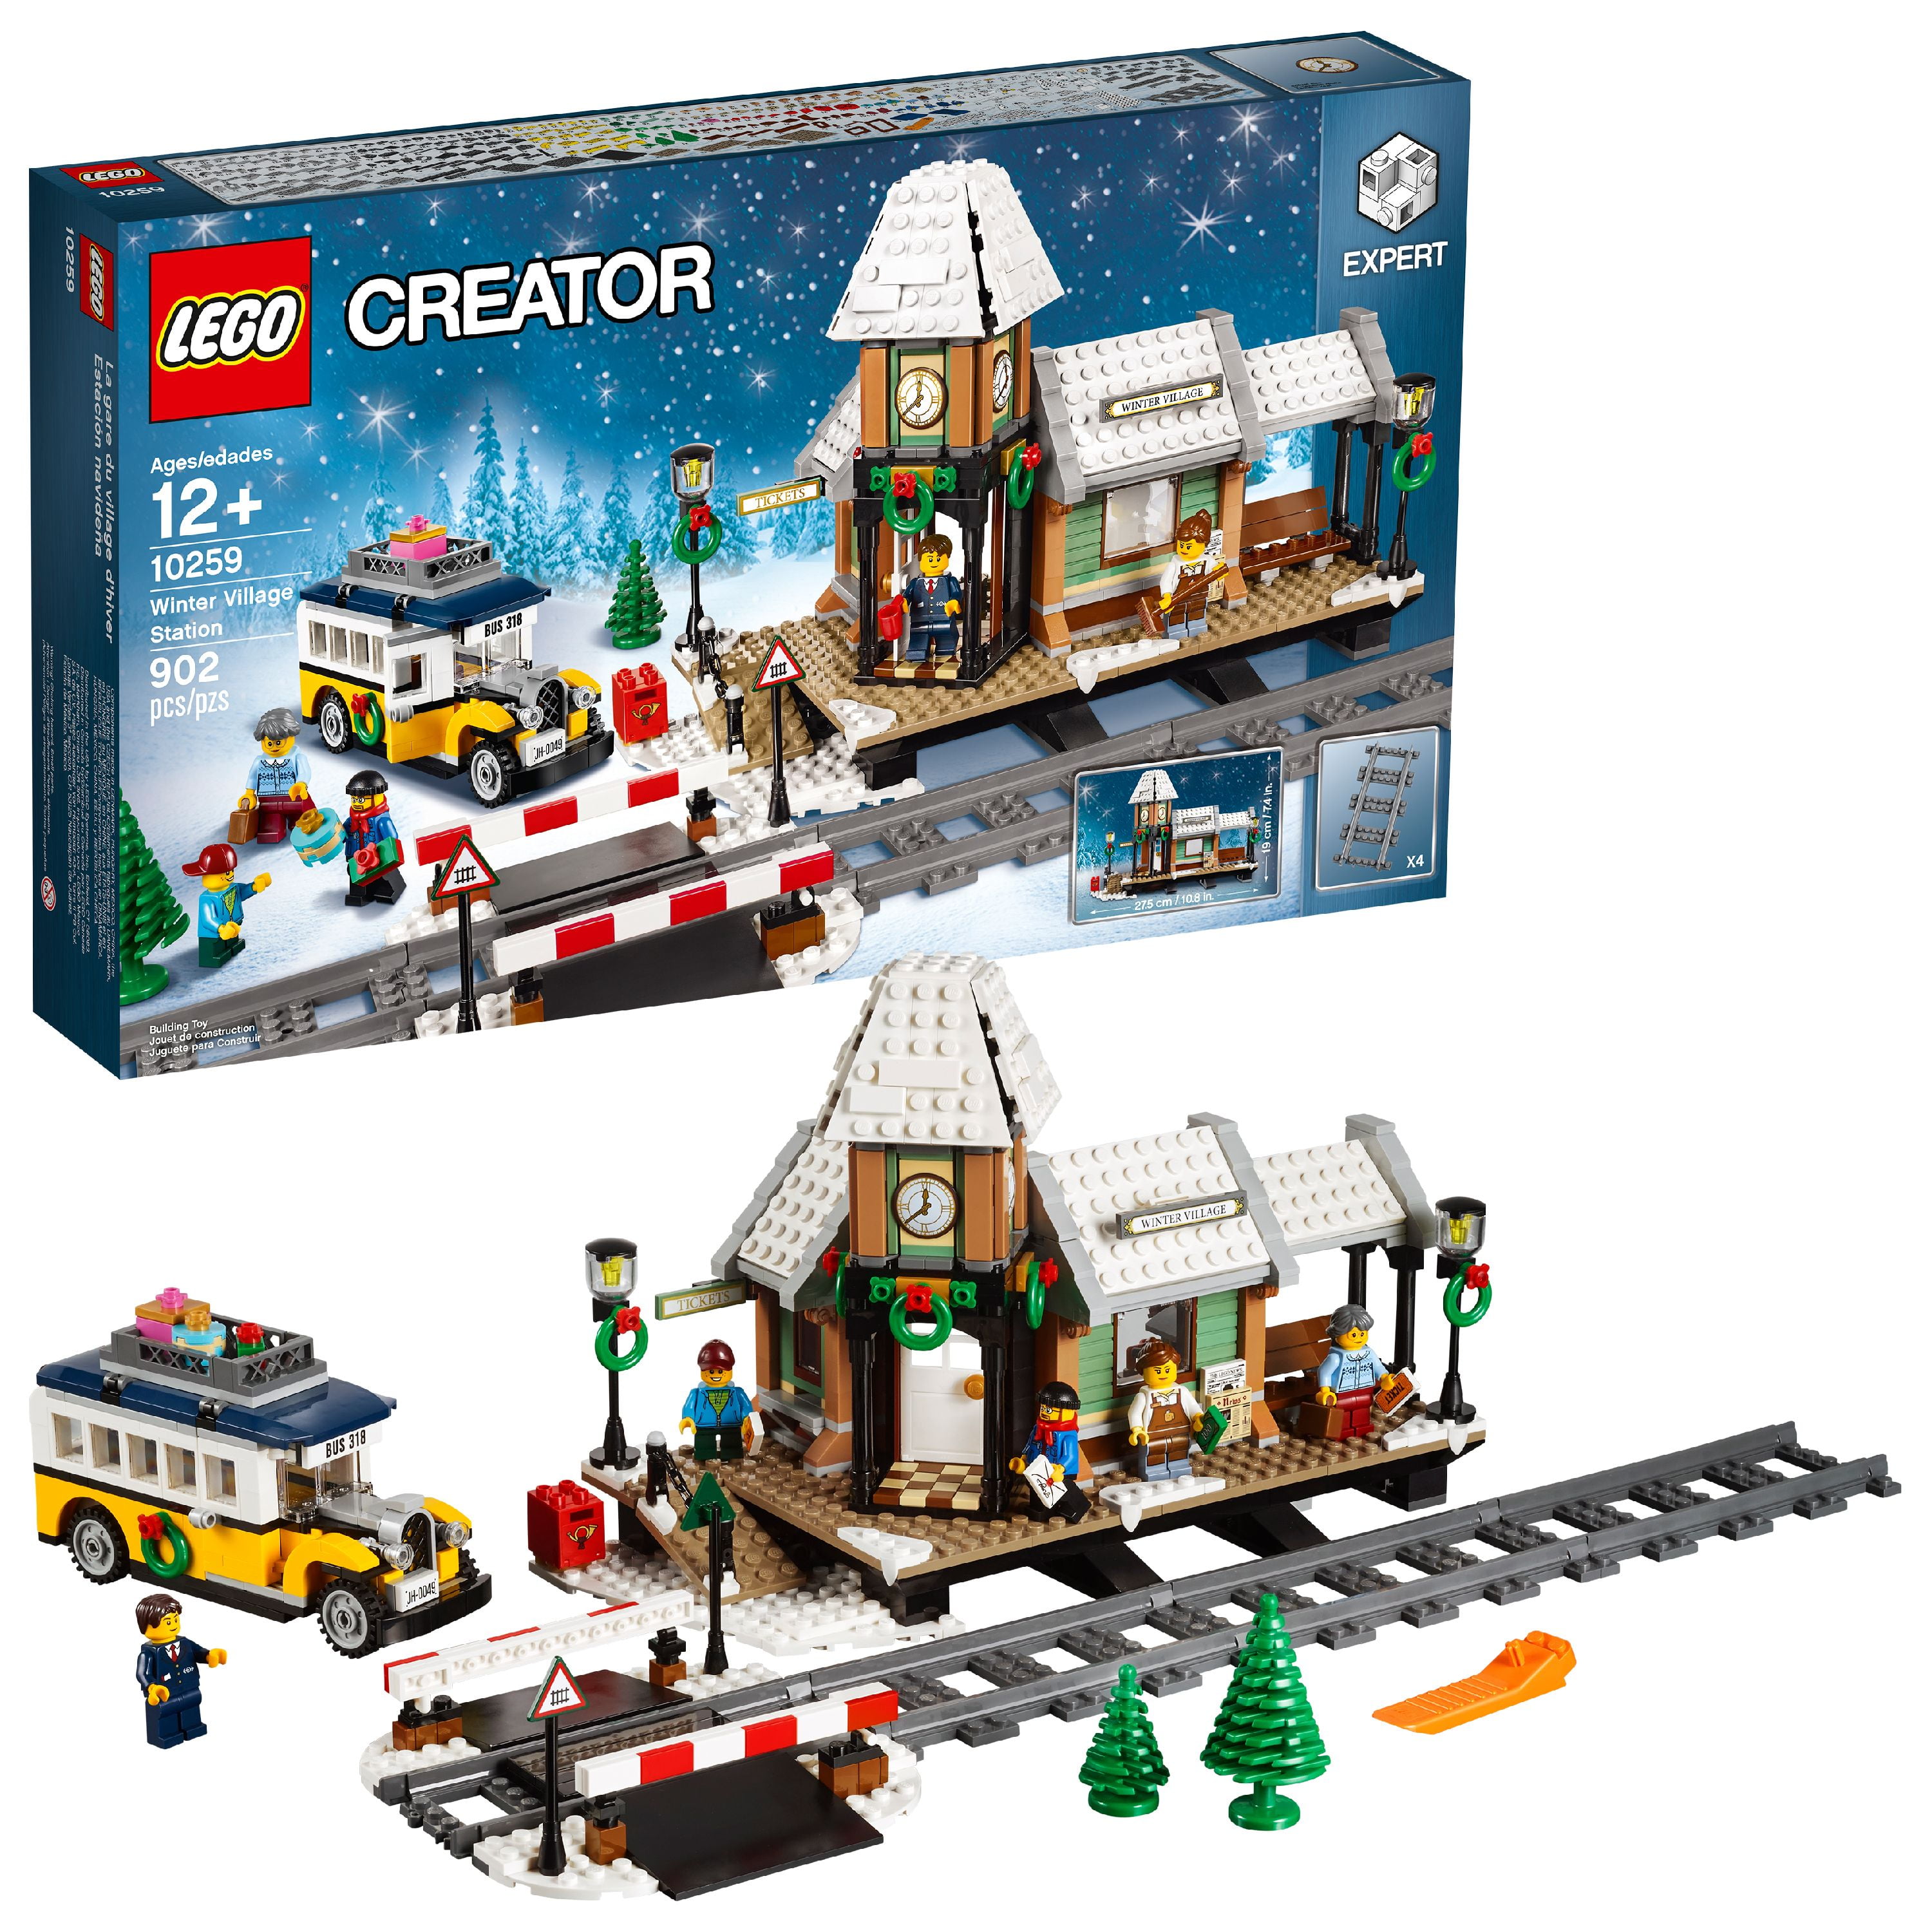 bestikke instans kubiske LEGO Creator Expert Winter Village Station 10259 - Walmart.com